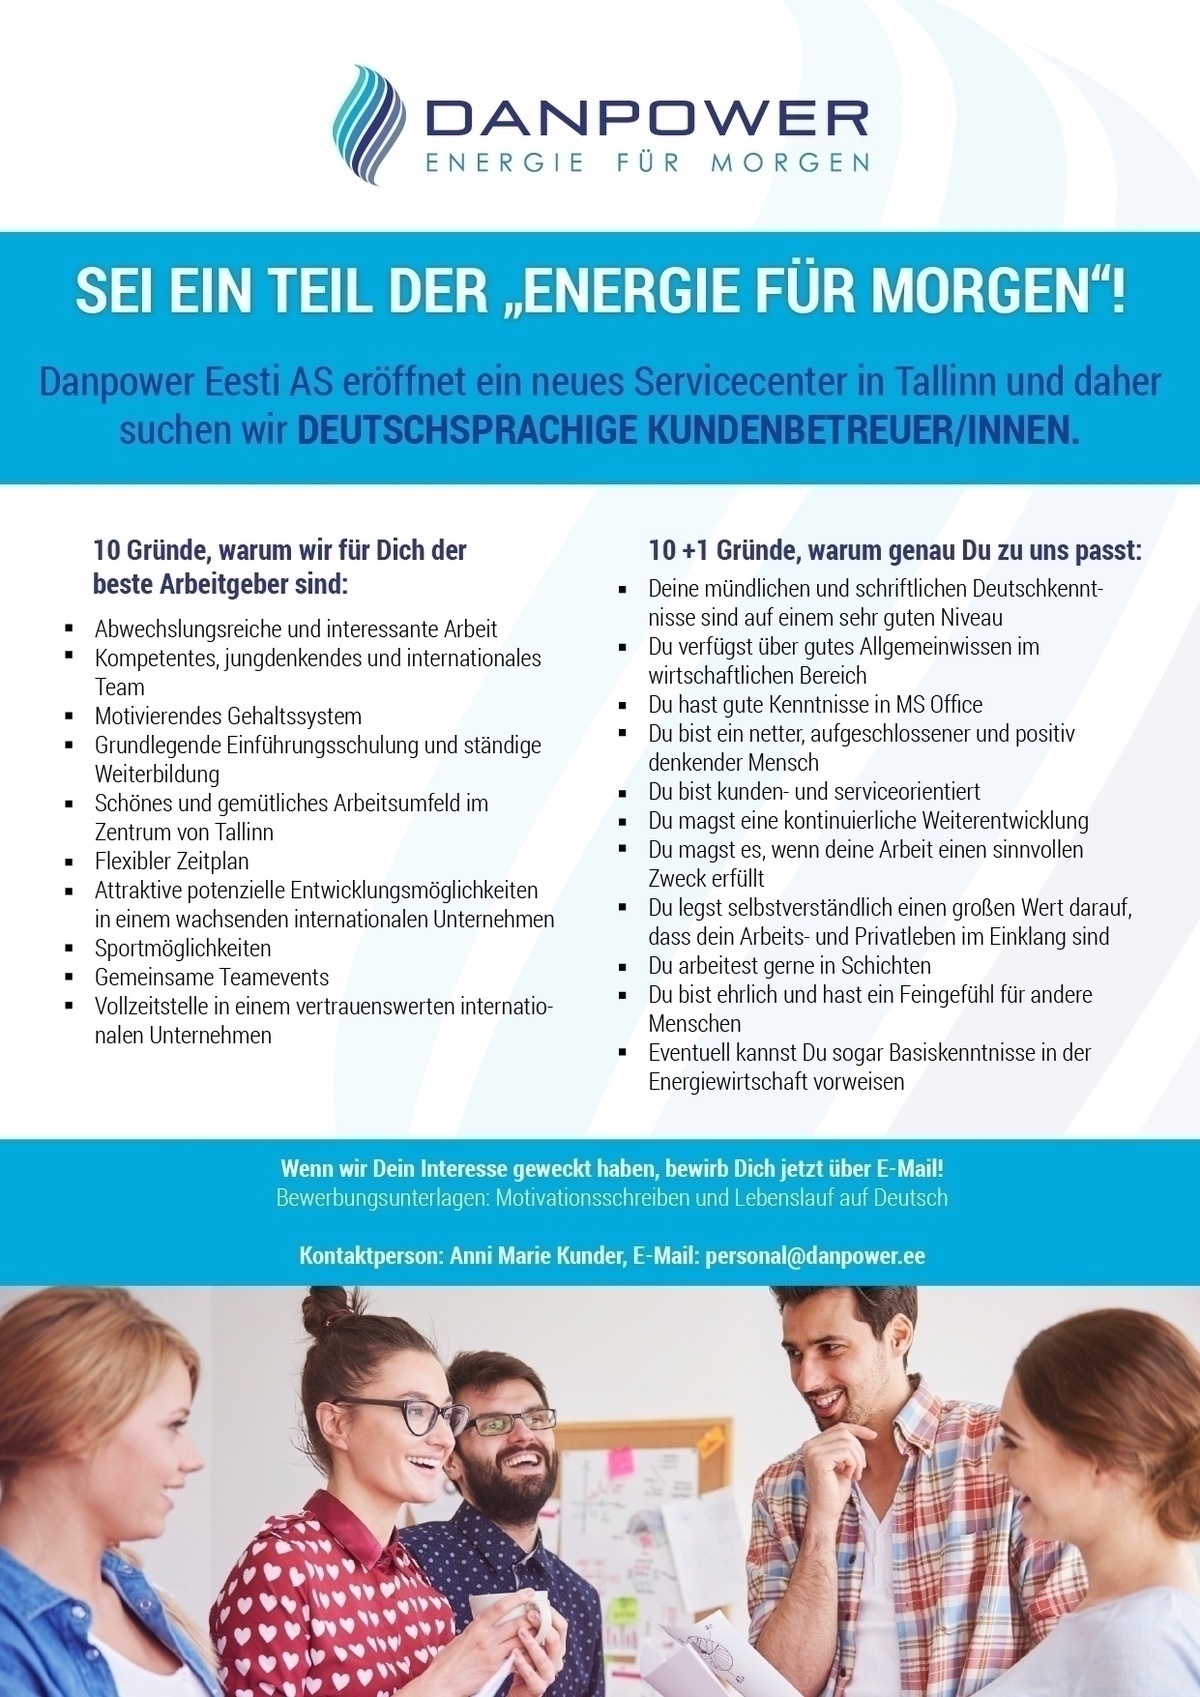 Danpower Eesti AS Deutschsprachige Kundenbetreuer / Saksa keele oskusega klienditeenindaja